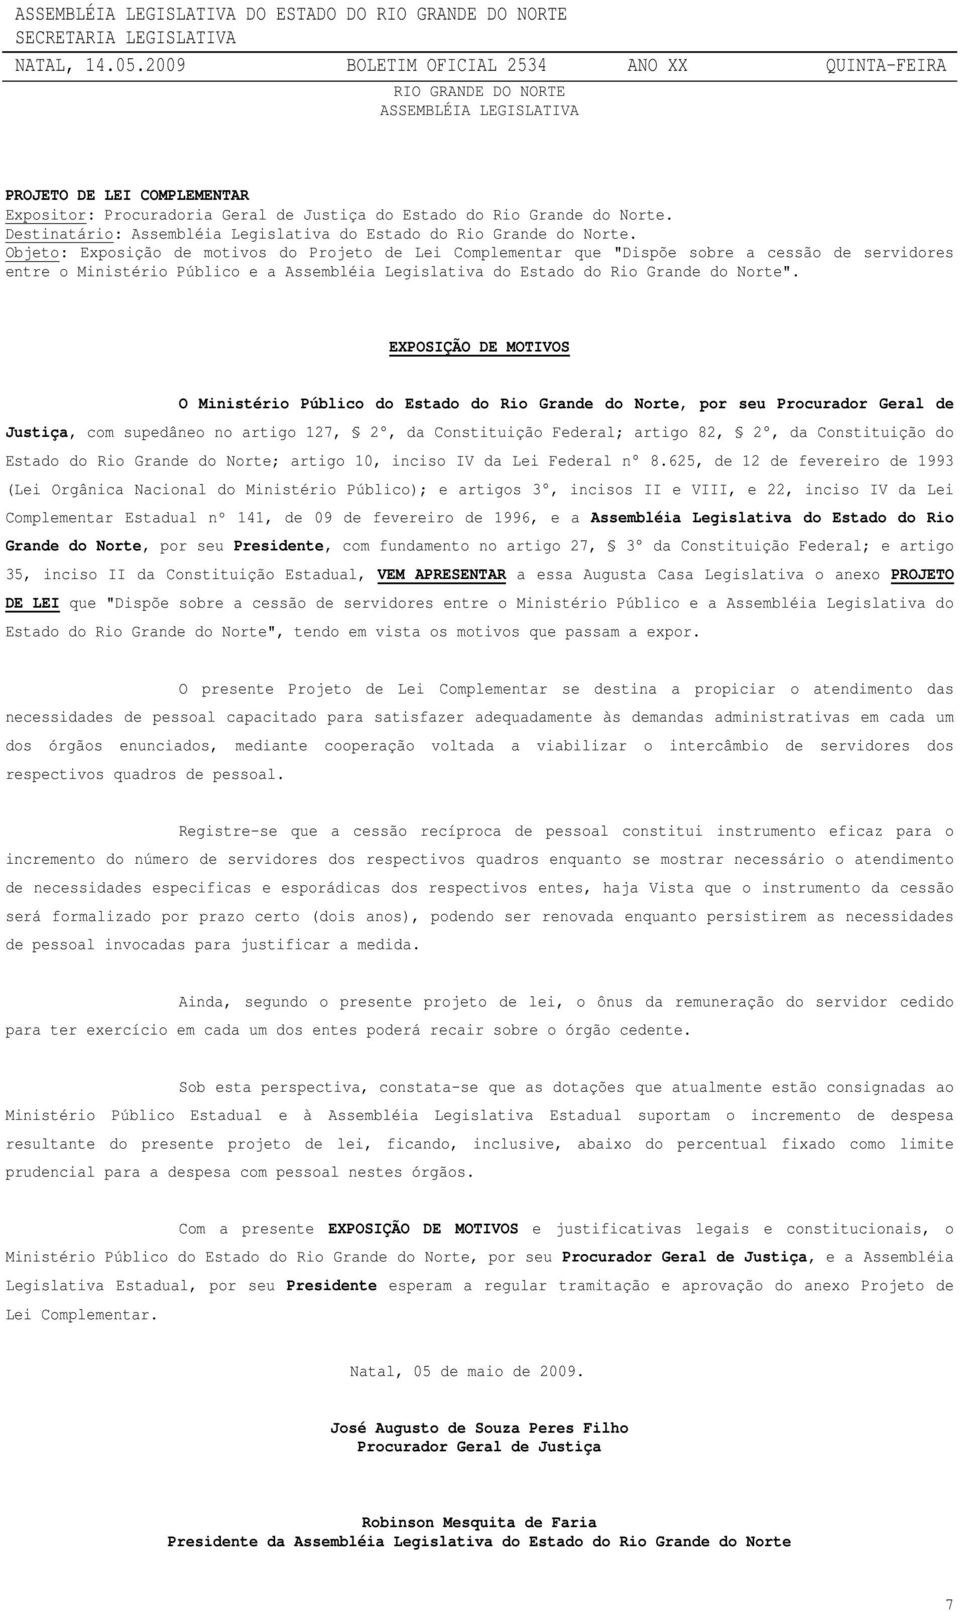 Objeto: Exposição de motivos do Projeto de Lei Complementar que "Dispõe sobre a cessão de servidores entre o Ministério Público e a Assembléia Legislativa do Estado do Rio Grande do Norte".